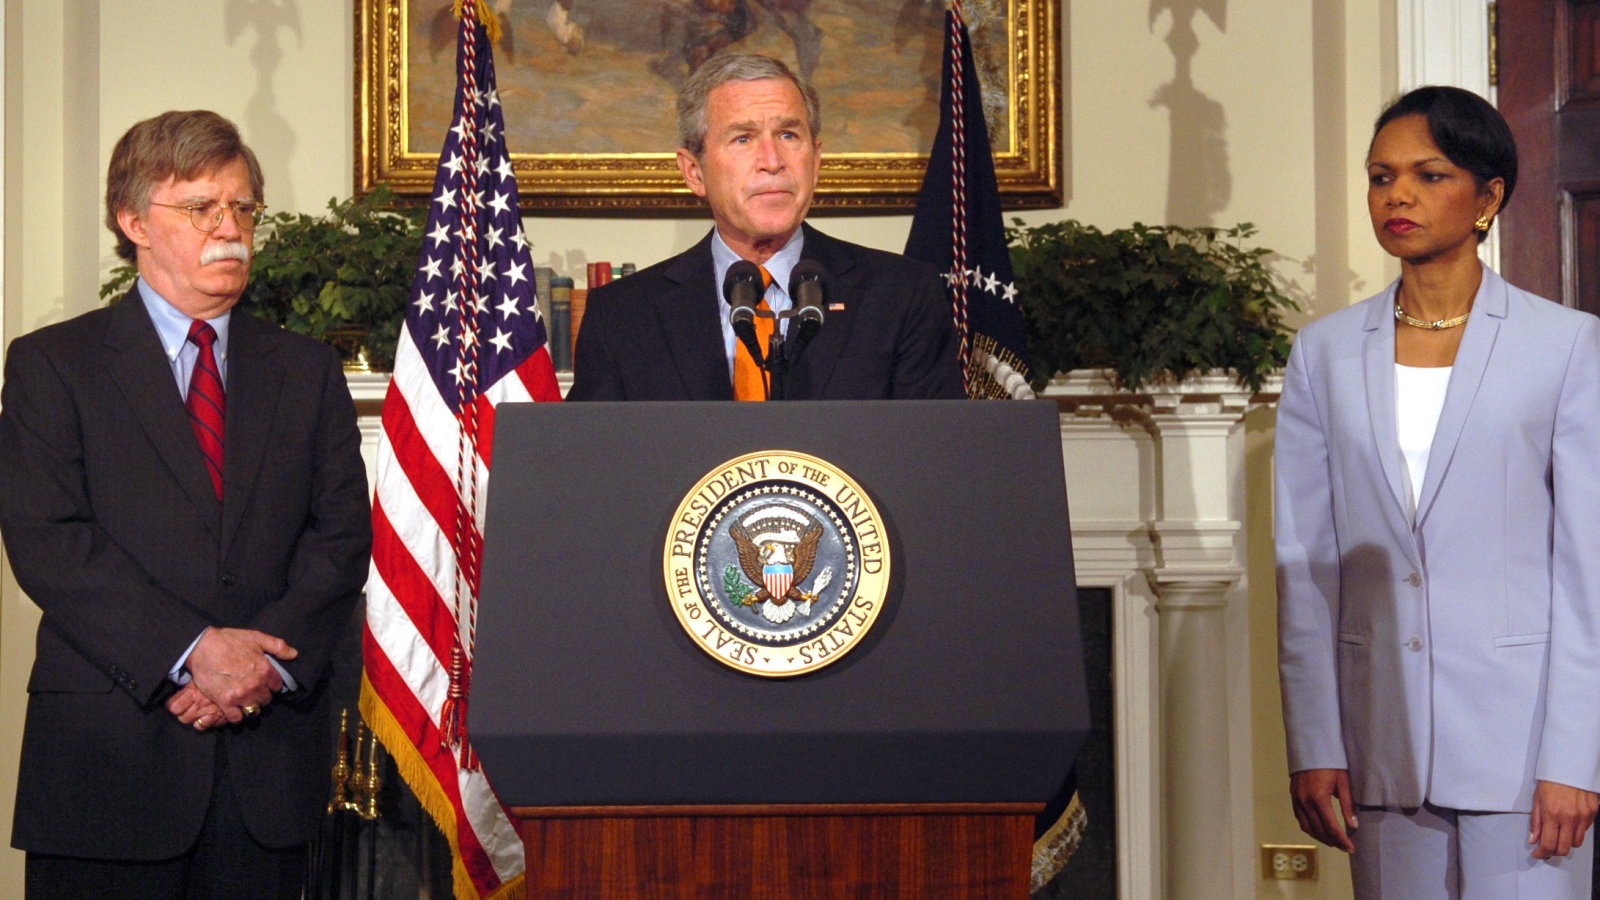 كوّن بولتون الكثير من العداوات جراء مواقفه الحادة مما دفع بوش للتخلي عنه، خاصة بعد تعيينه لكونداليزا رايس في منصب وزيرة الخارجية عام 2005